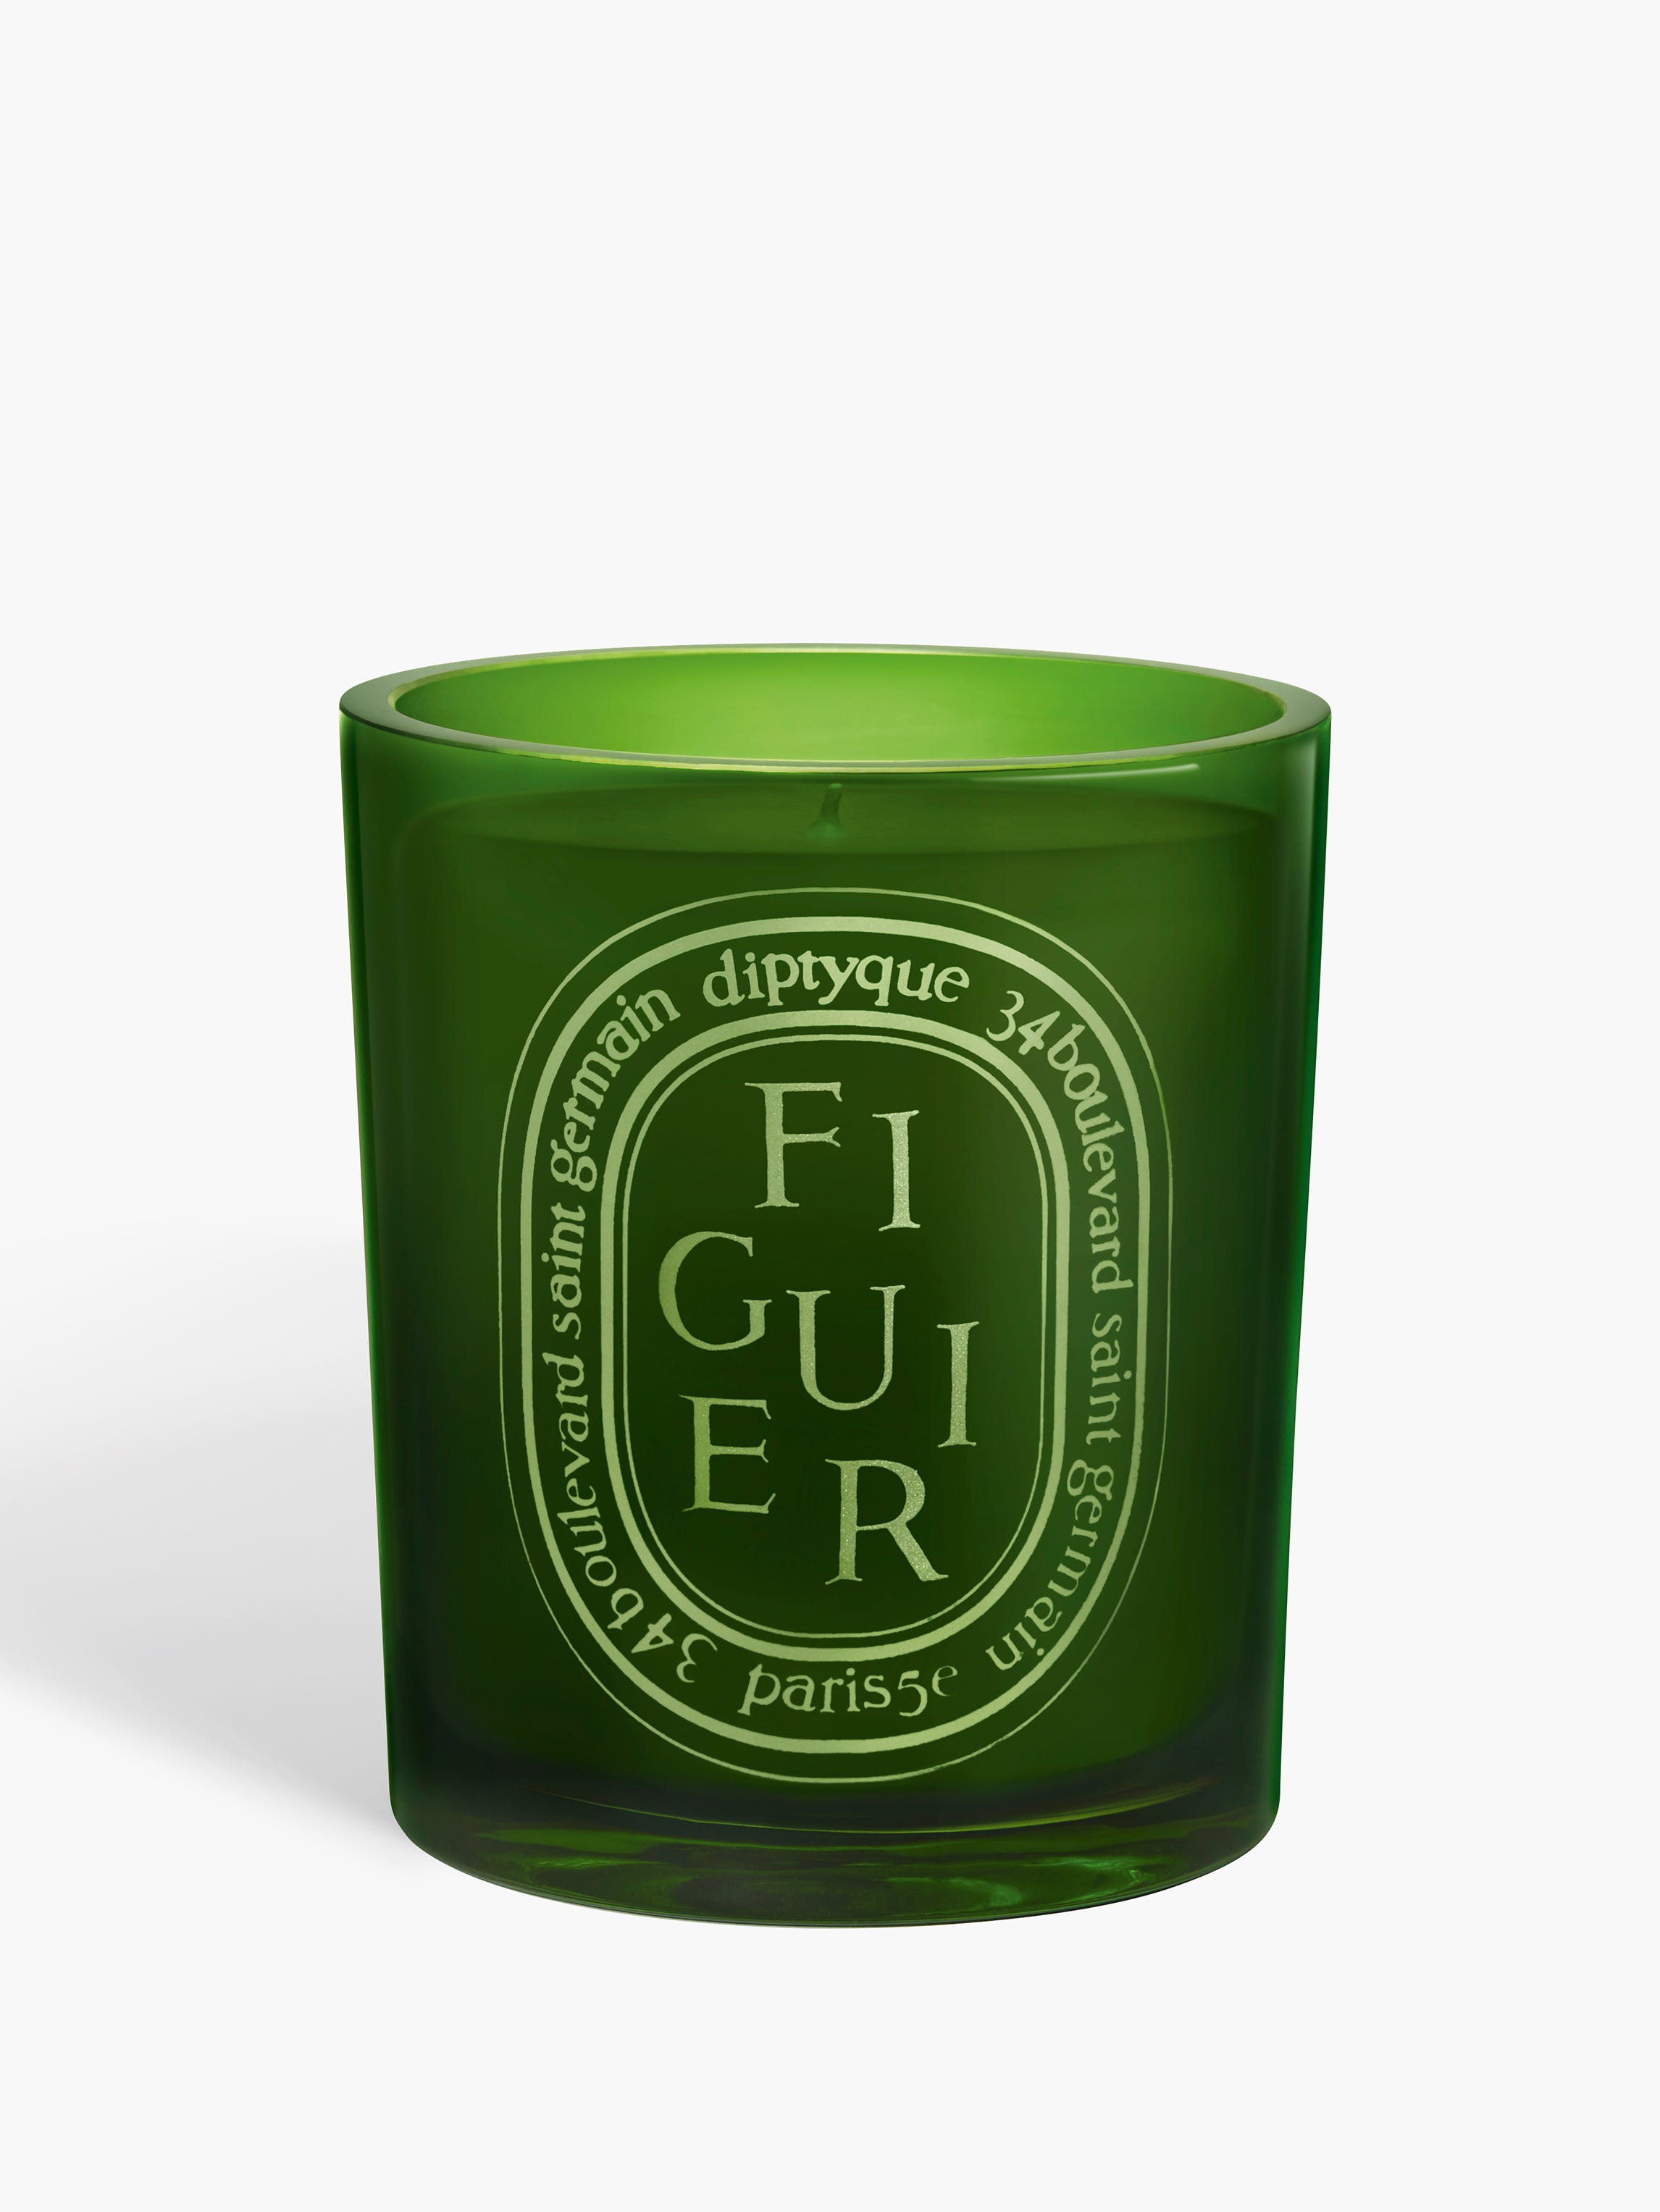 Figuier (Fig Tree) - Medium candle Medium | Diptyque Paris